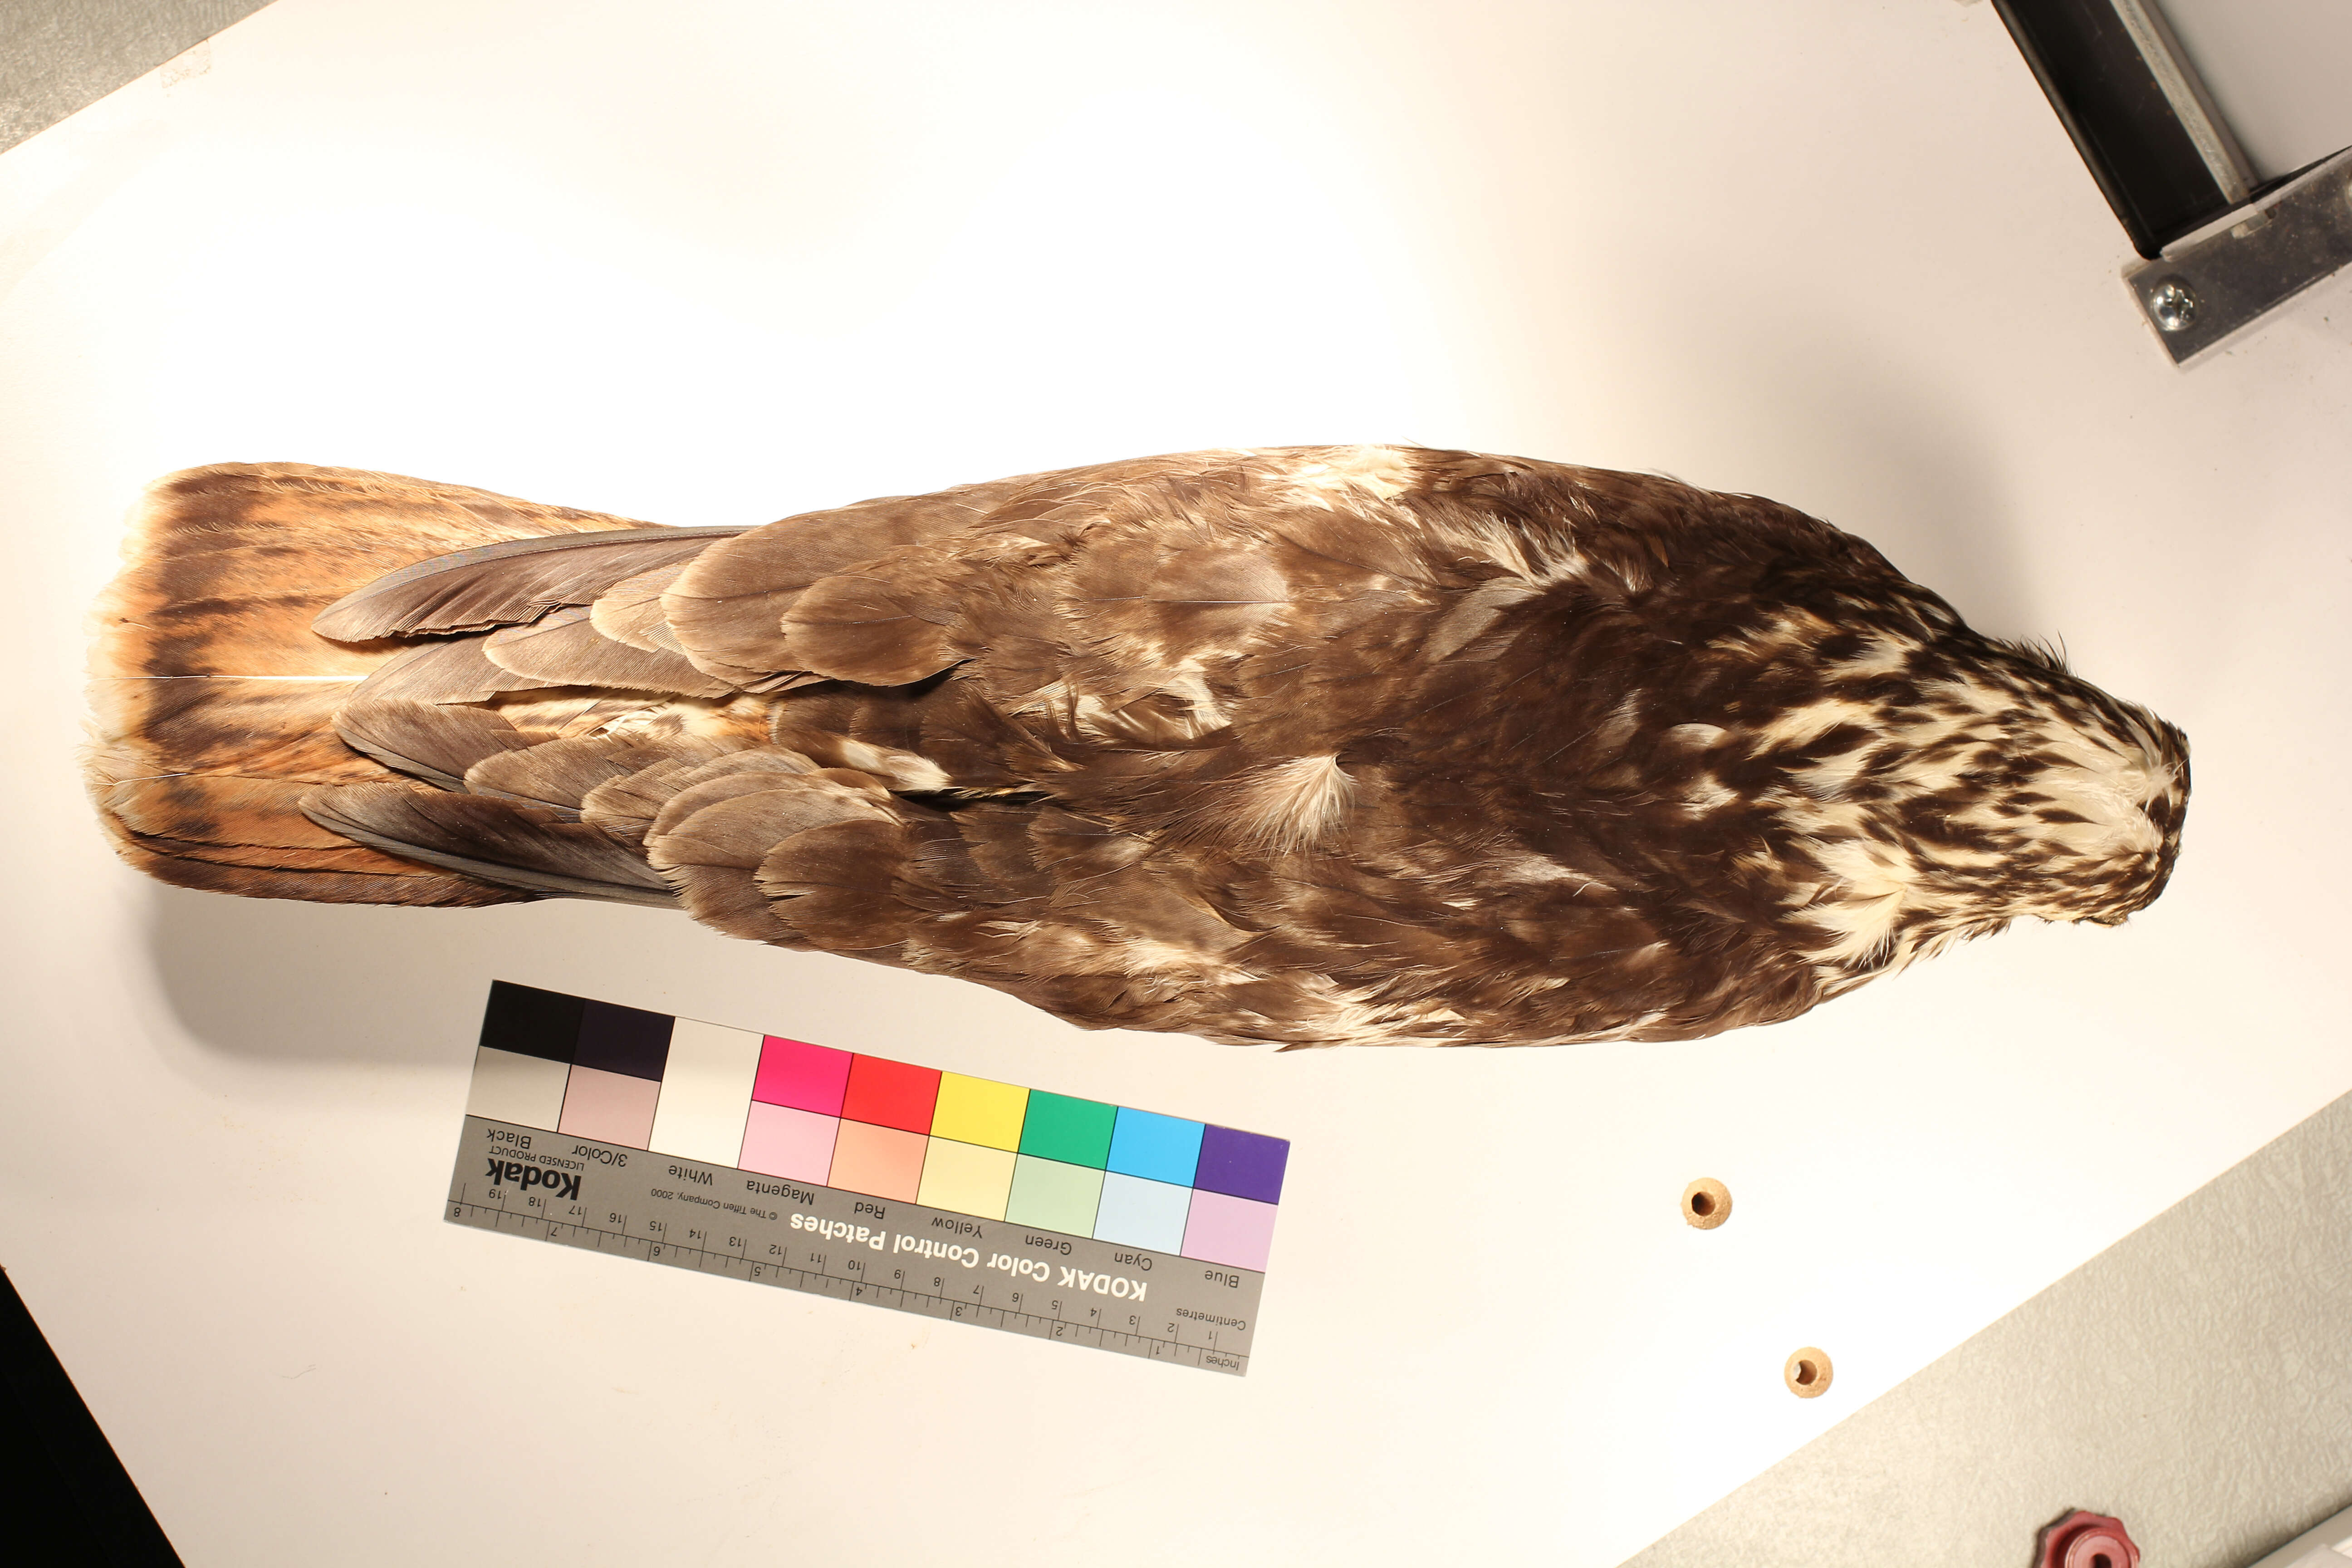 Image of Harlan's Hawk